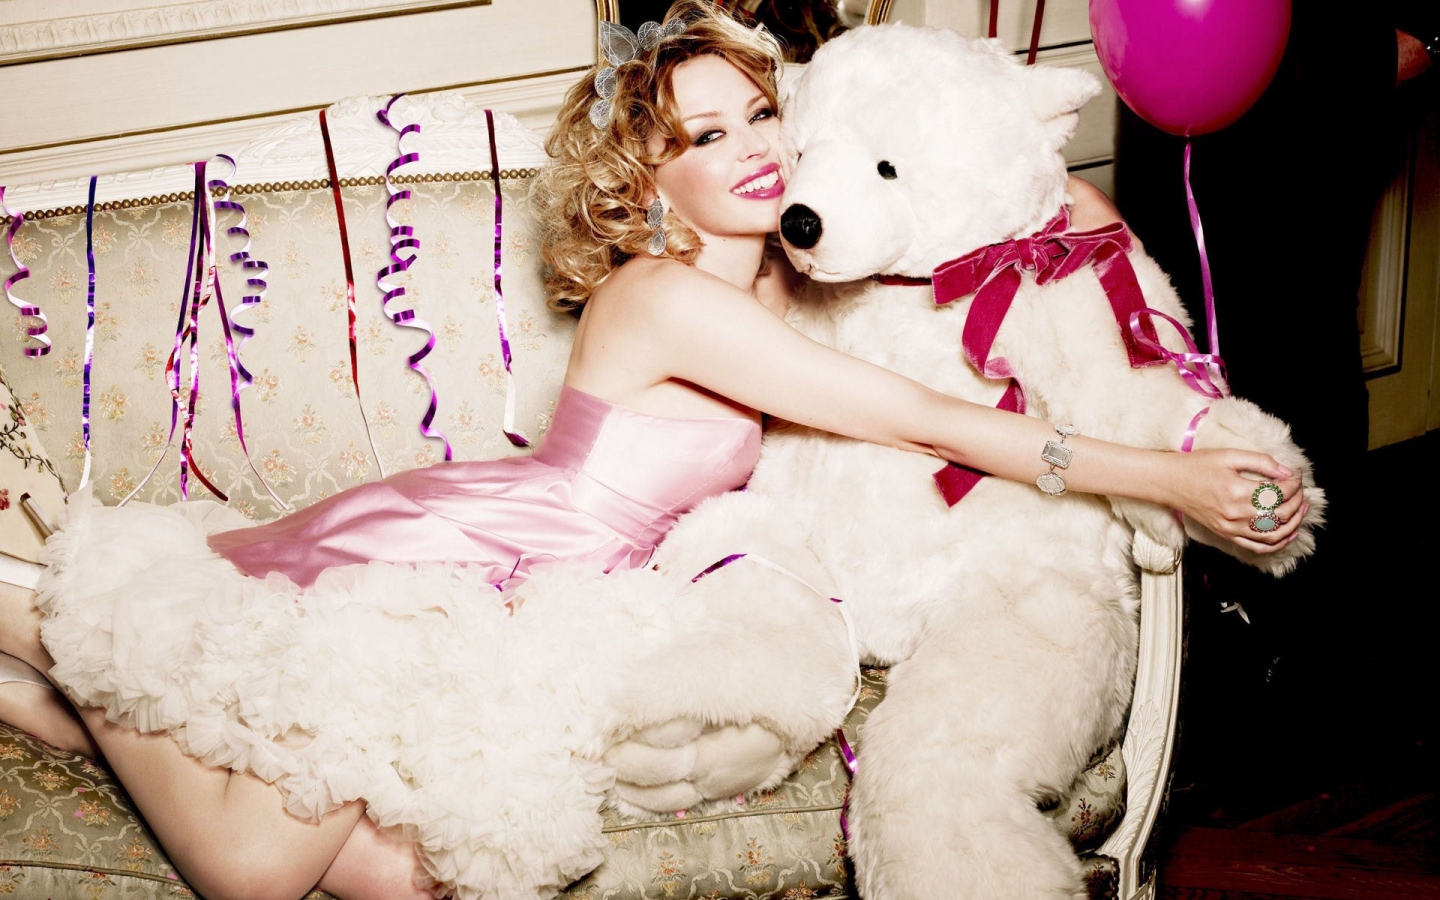 Kylie Minogue Bear Love for 1440 x 900 widescreen resolution